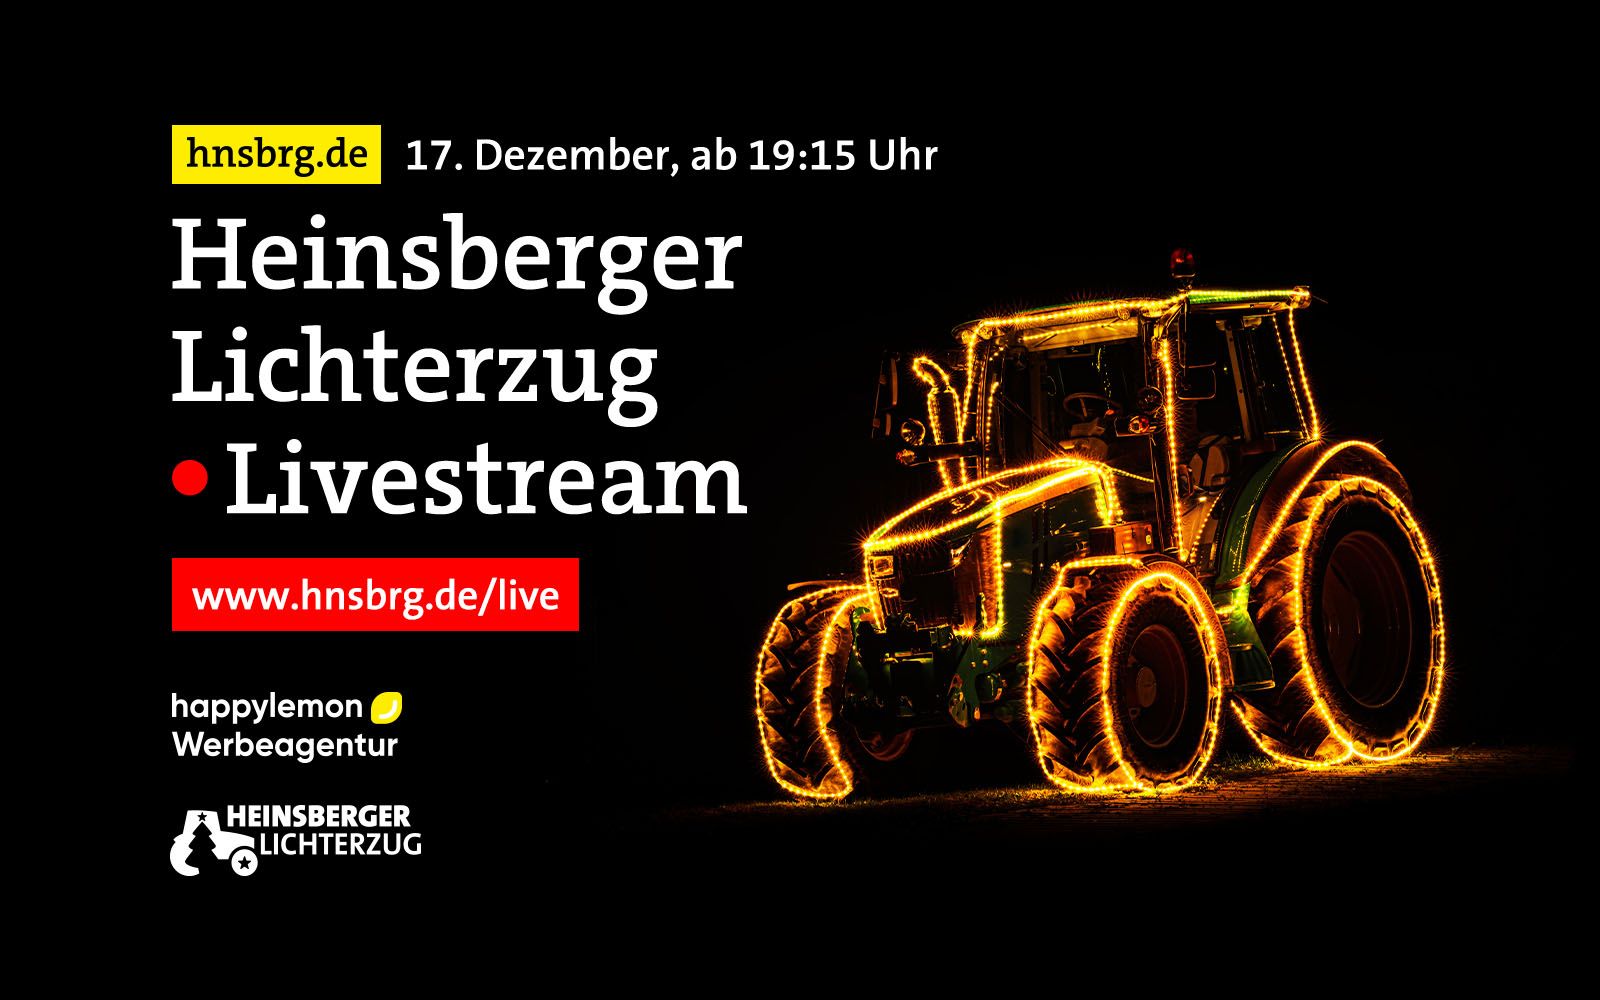 Livestream zum Heinsberger Lichterzug, Ausstellung und eure Reaktionen